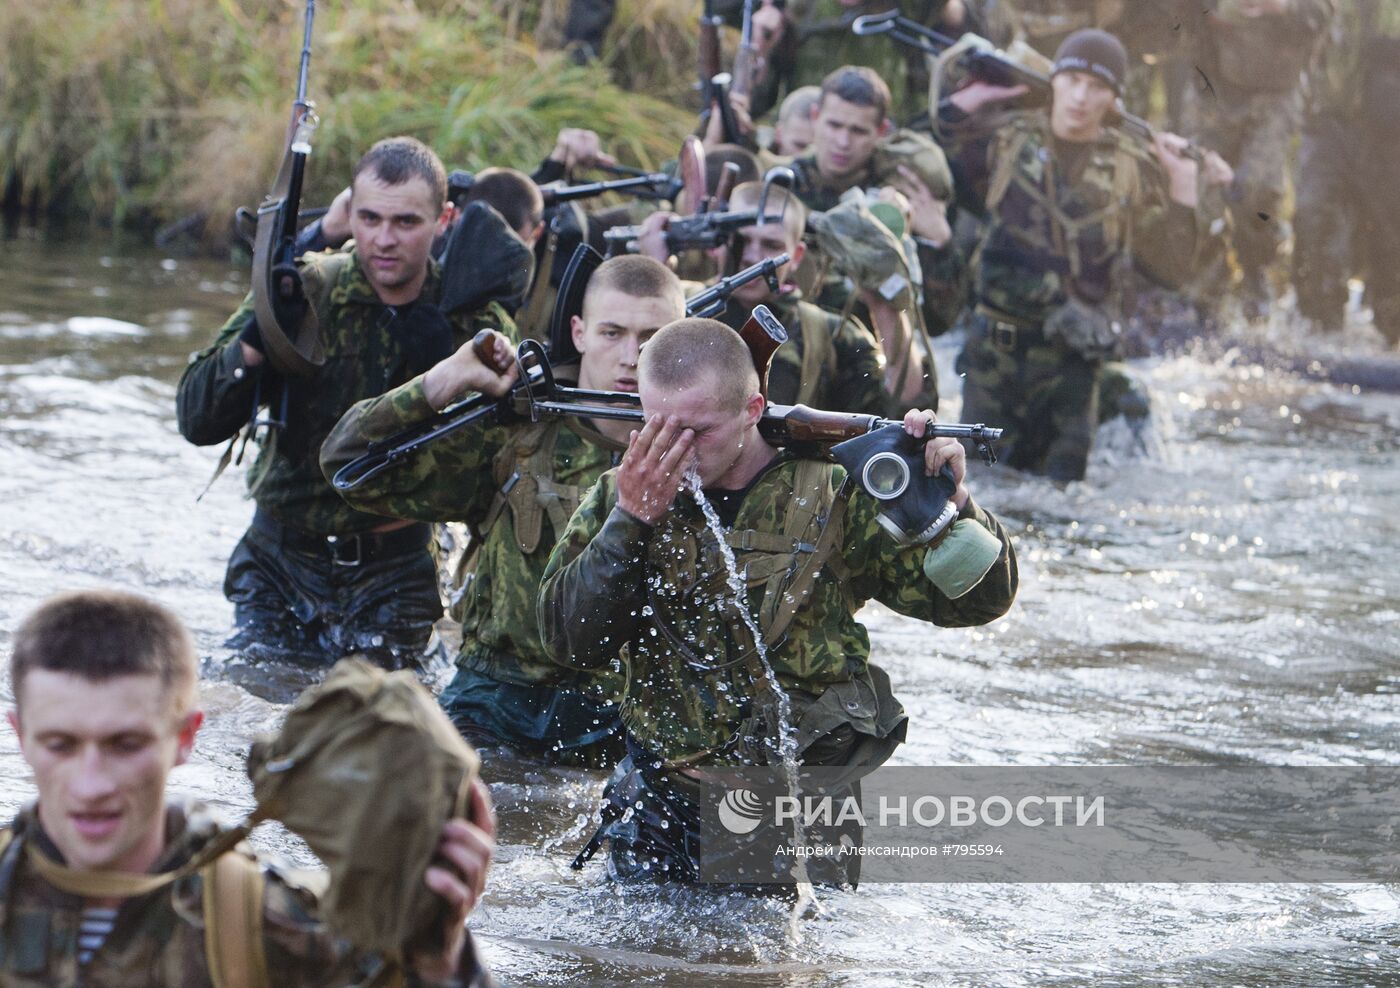 Квалификационные испытания белорусского спецназа